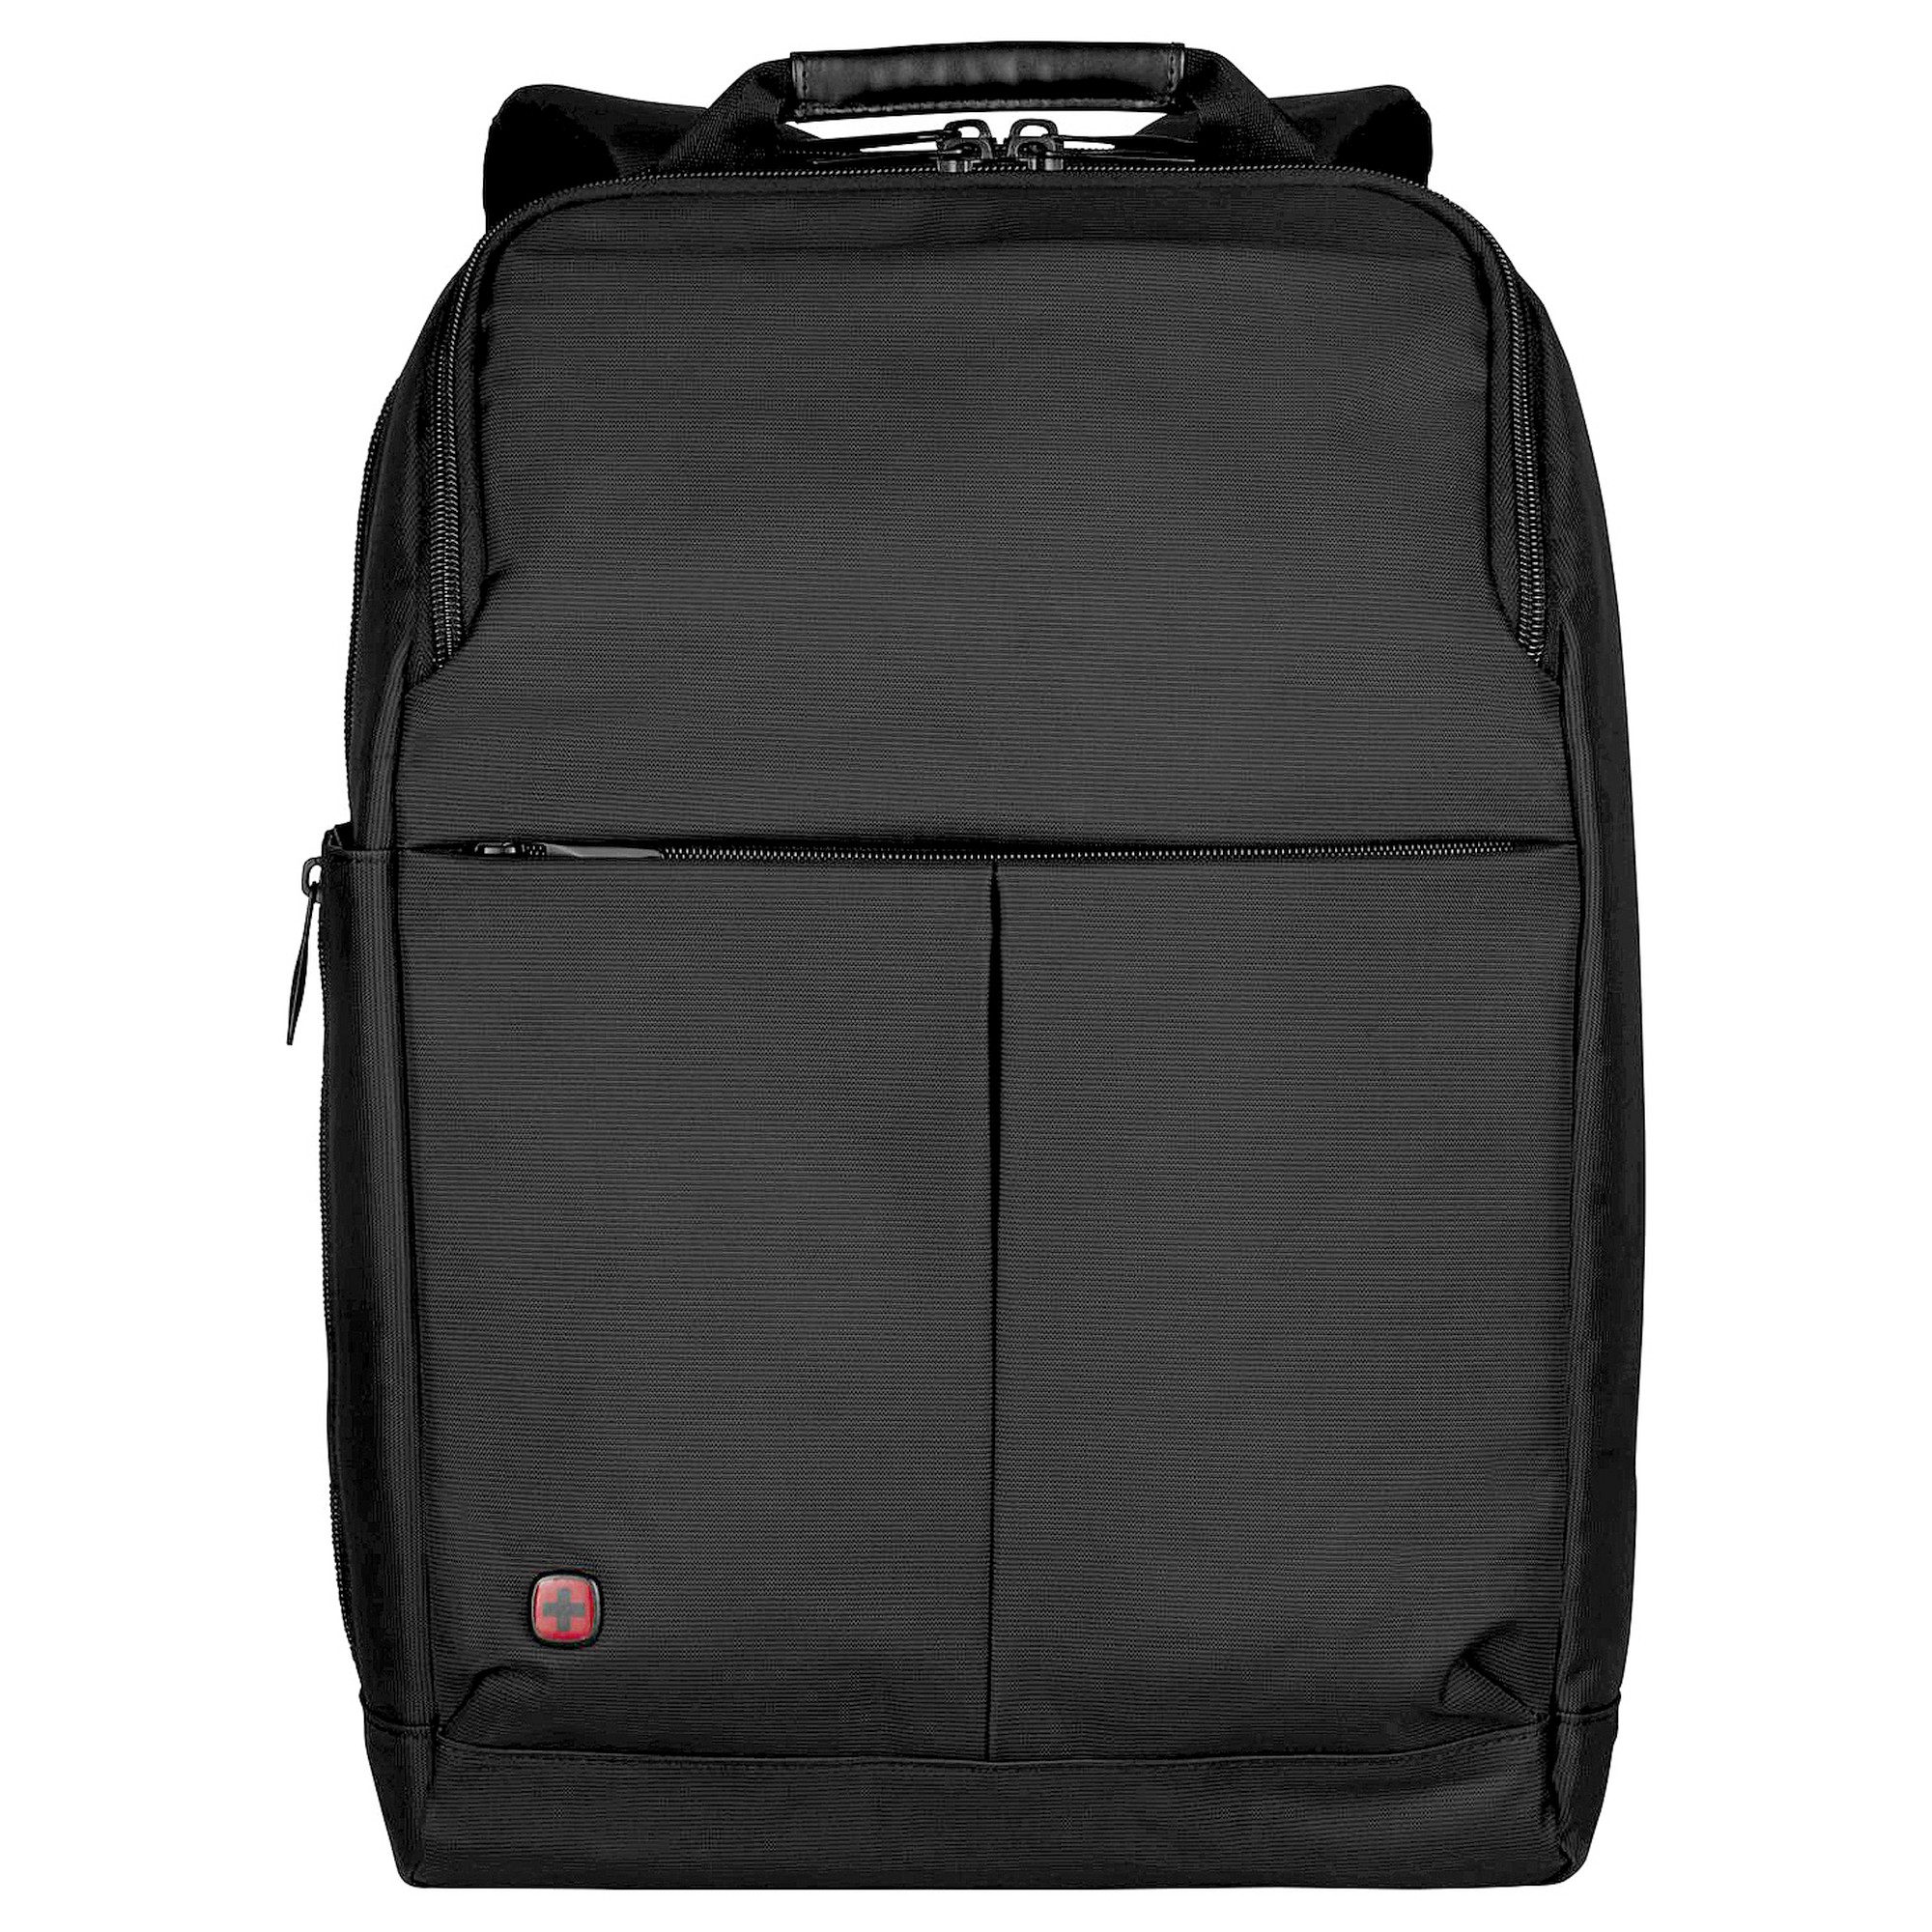 Сумка для ноутбука Wenger Reload 16 44 cm, черный рюкзак для ноутбука reload 16 16 дюймов нейлон wenger черный